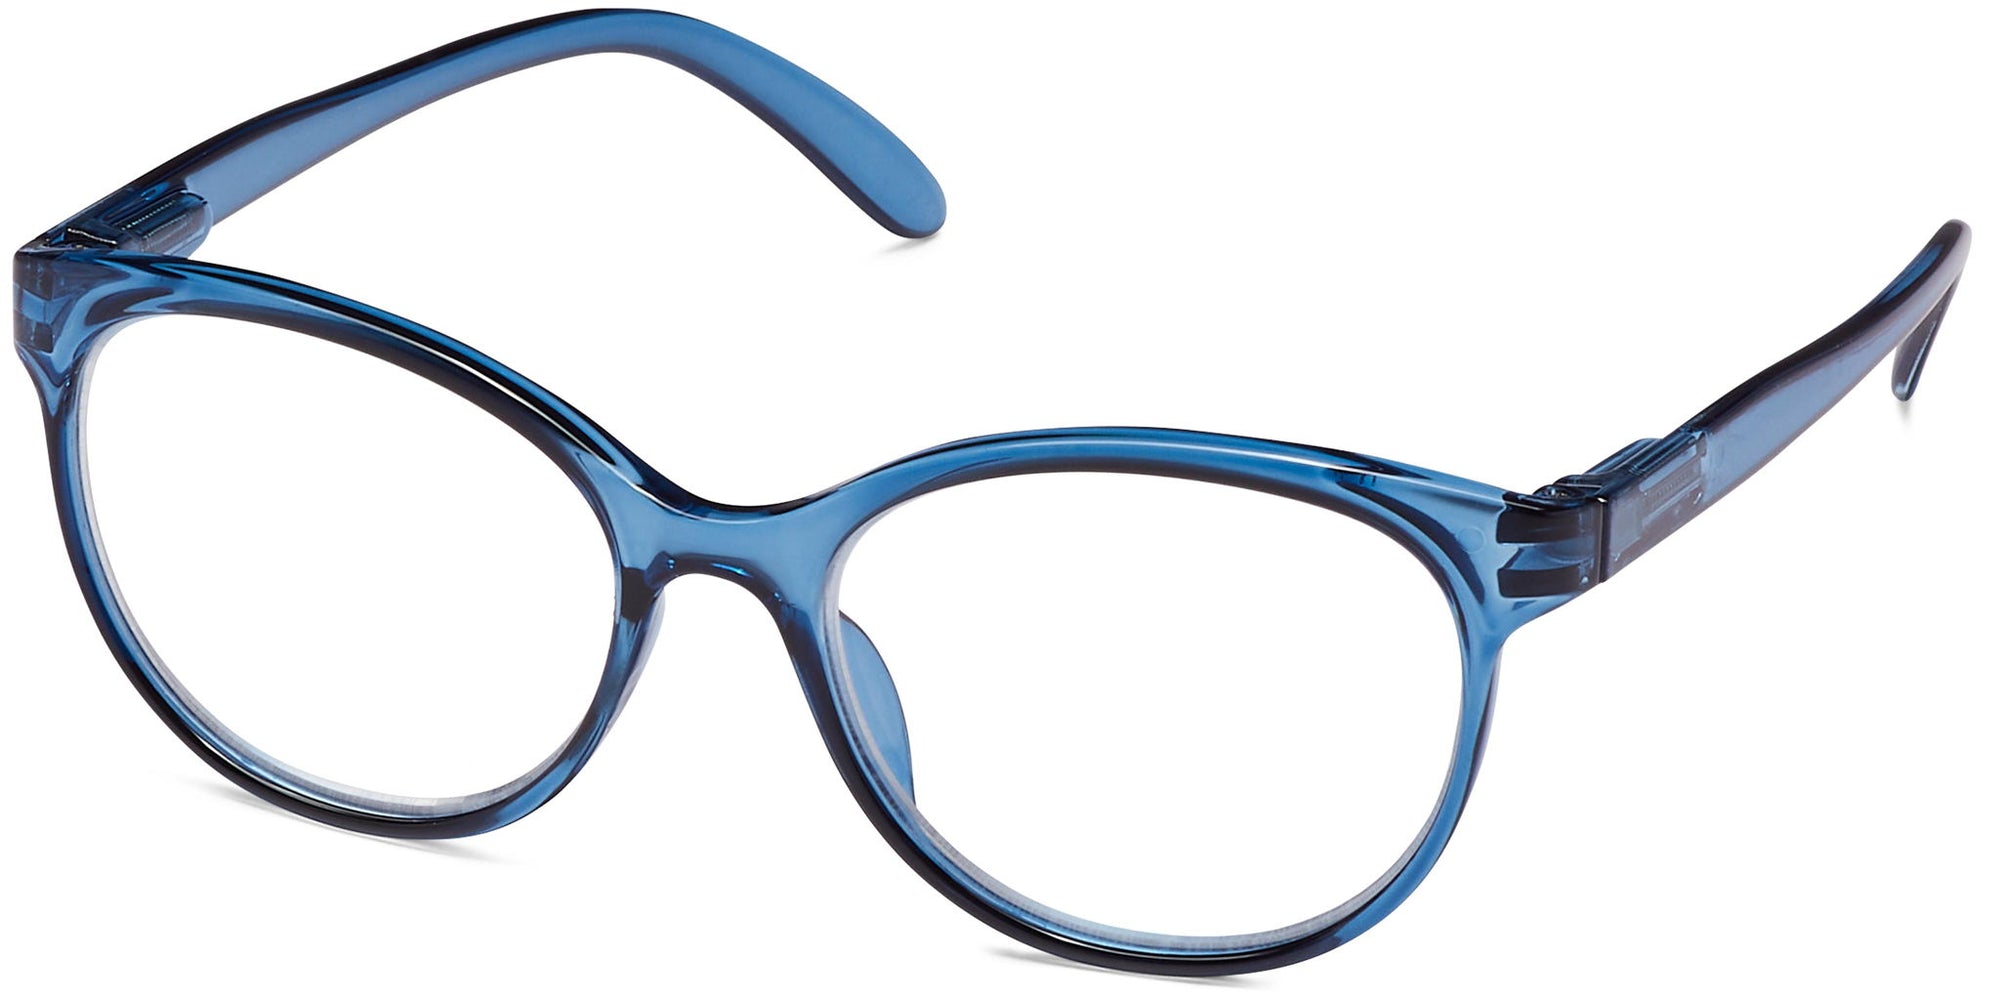 Poppy - Blue / 1.25 - Reading Glasses